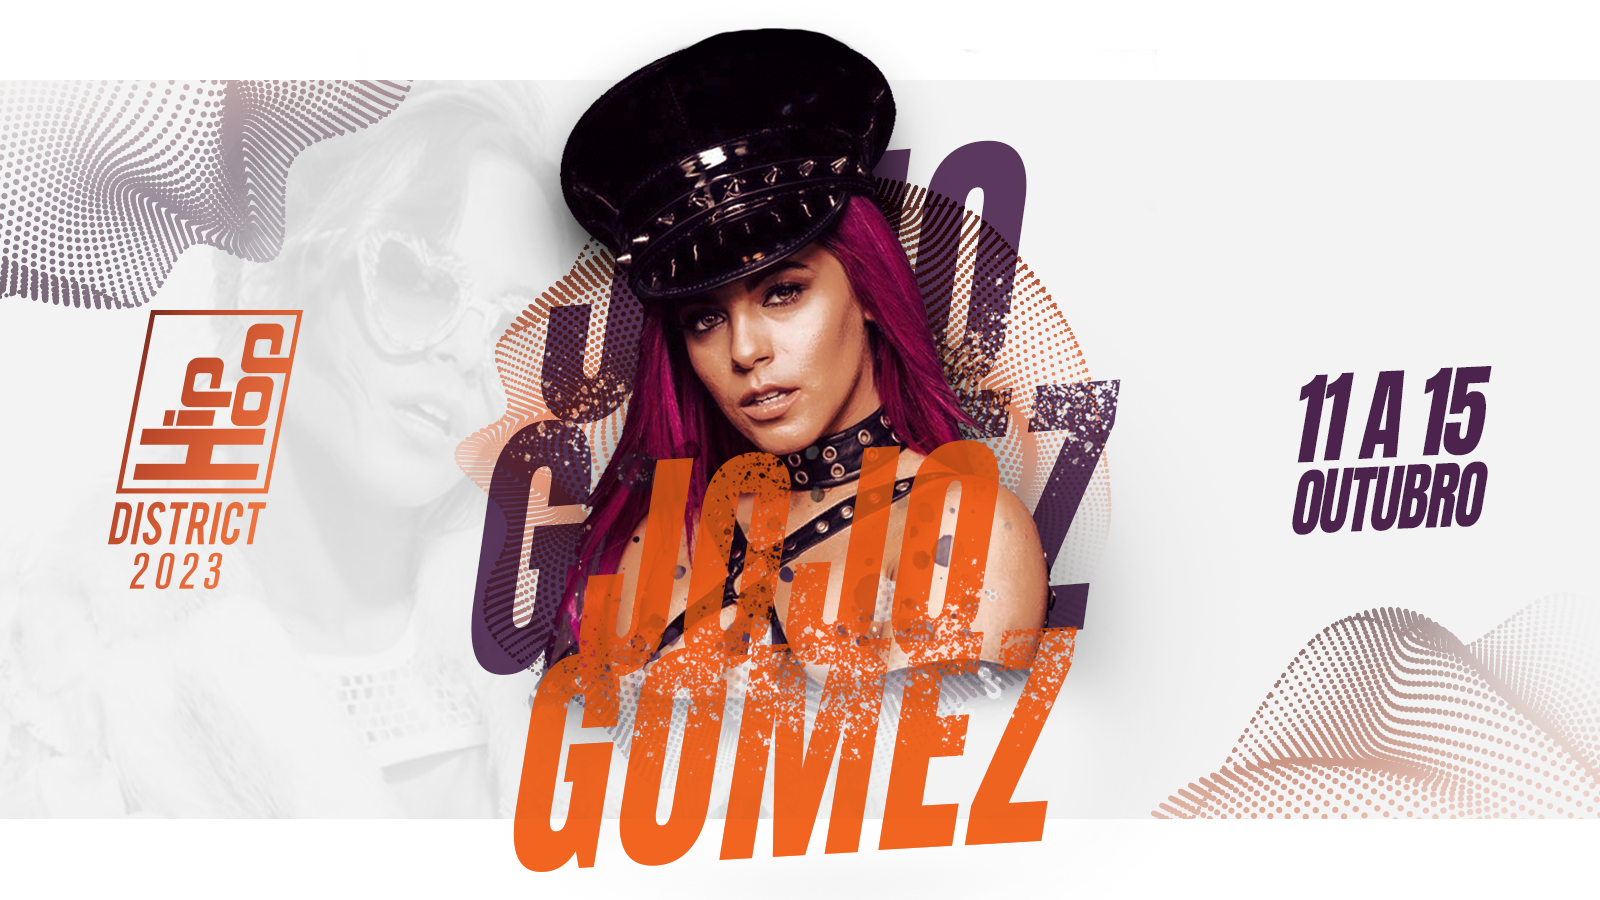 Esta imagem apresenta a artista Jojo Gomez, juntamente com o logo do Hip Hop District e a data do evento.